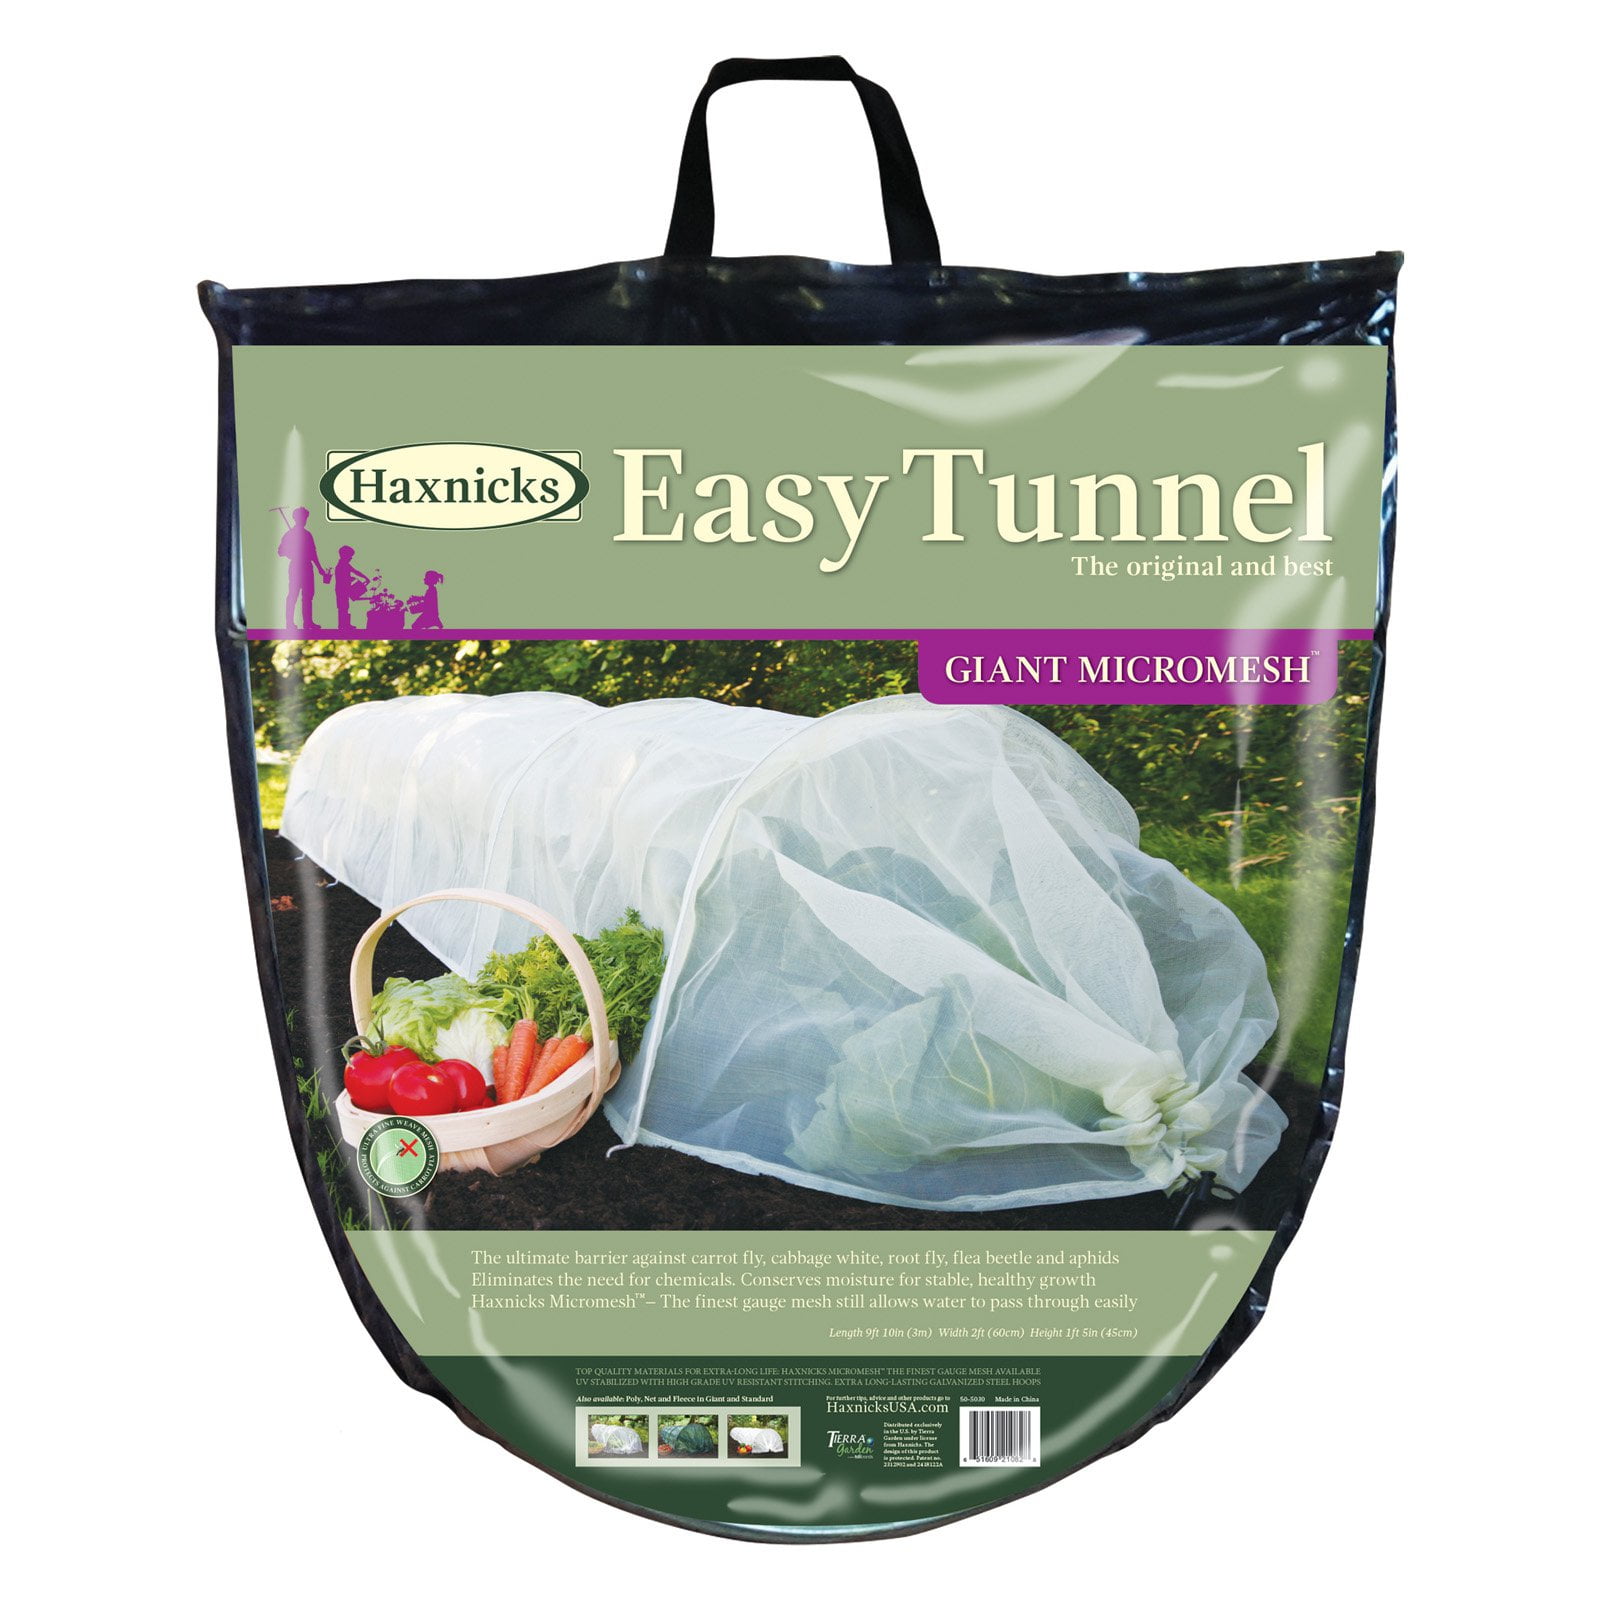 Giant Tierra Garden 50-5020 Haxnicks Easy Shade Net Tunnel Garden Cloche